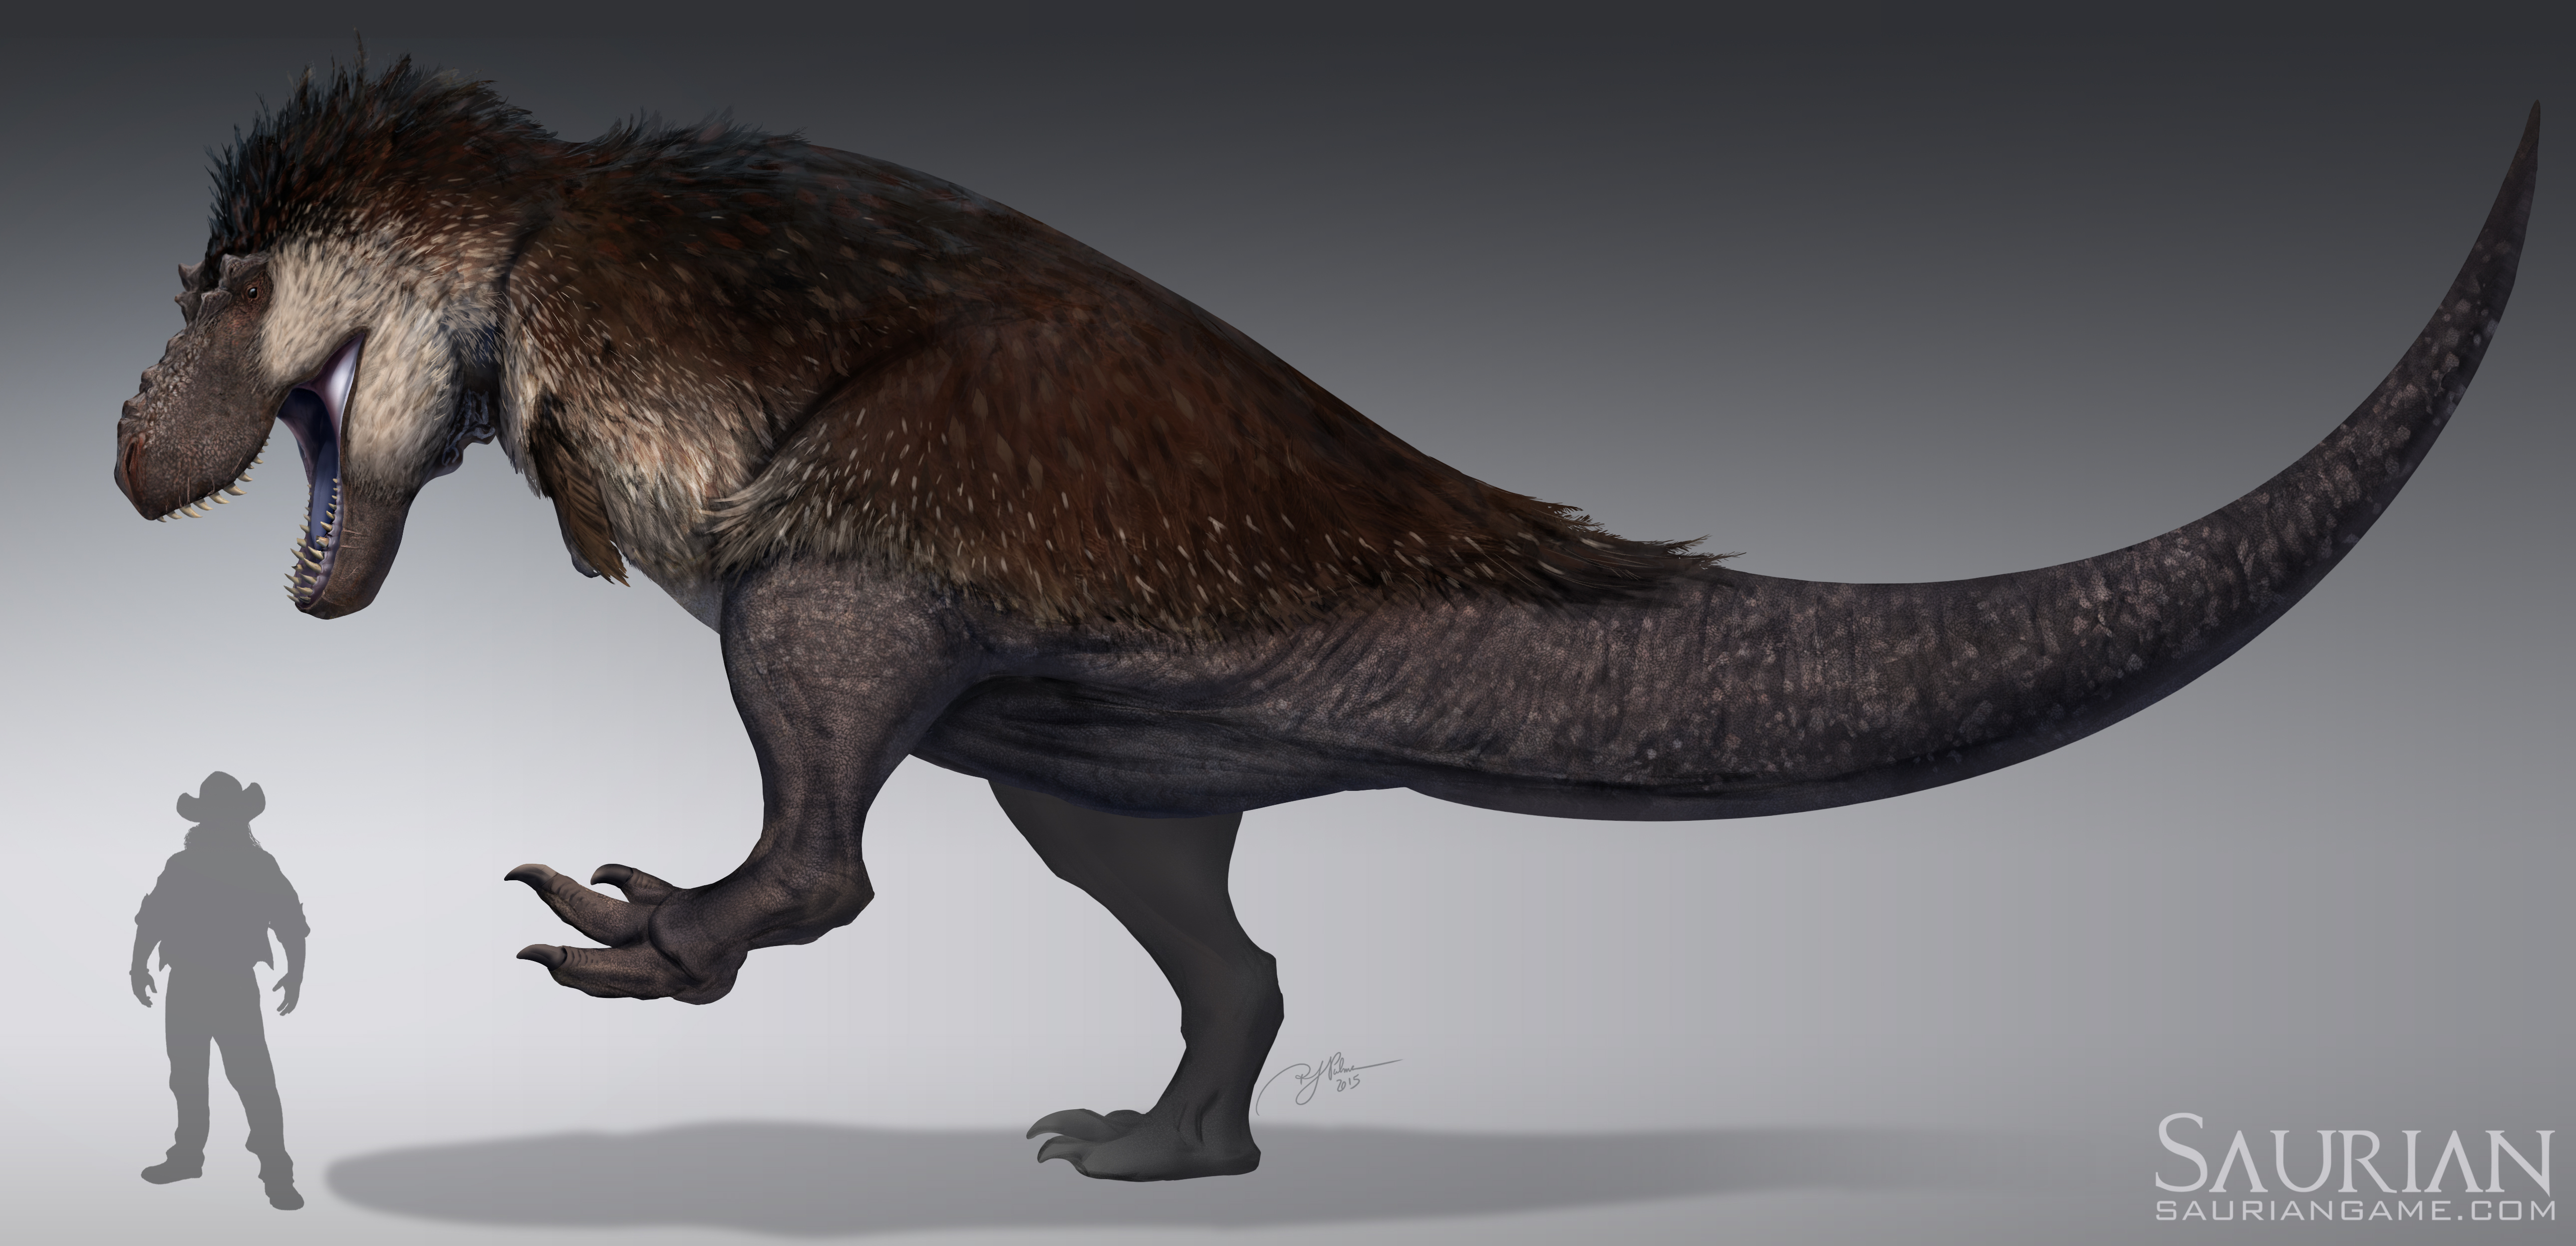 Saurian-Tyrannosaurus rex by arvalis on DeviantArt